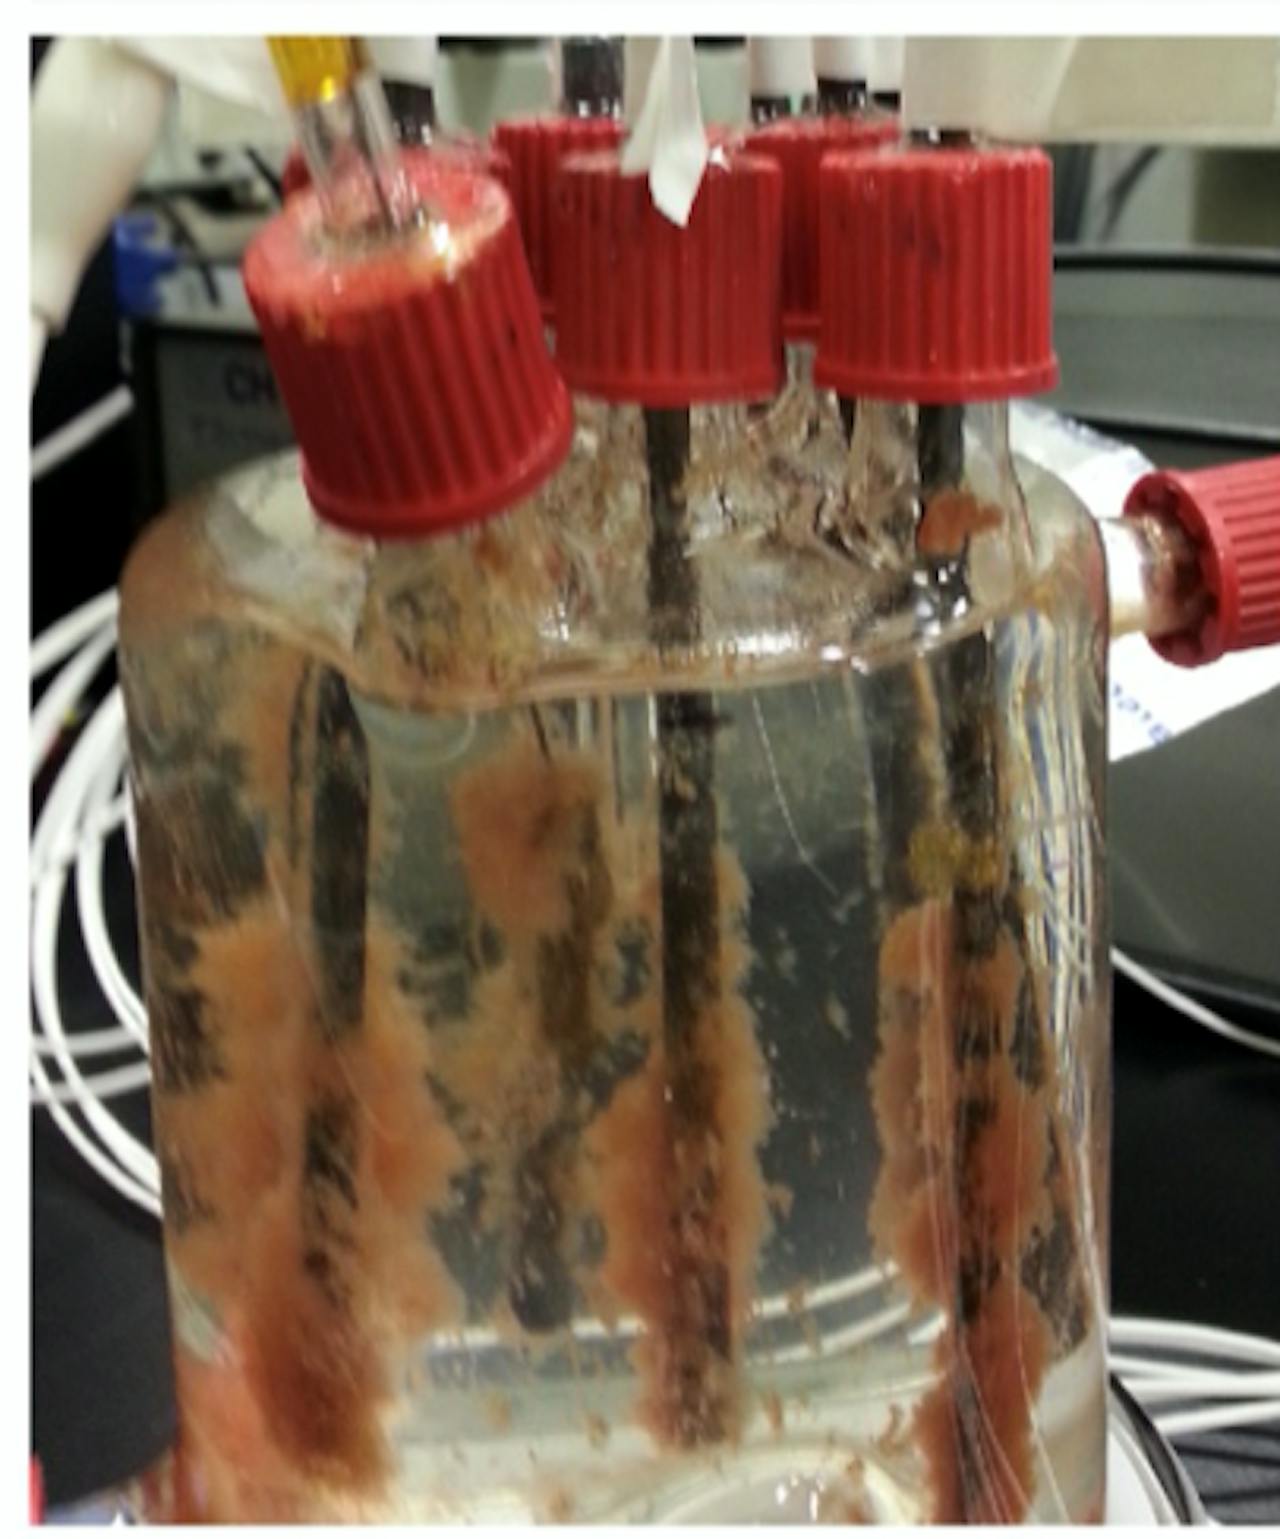 De anammoxbacterie groeit op een elektrode in afvalwater en zet ammonium om in stroom.